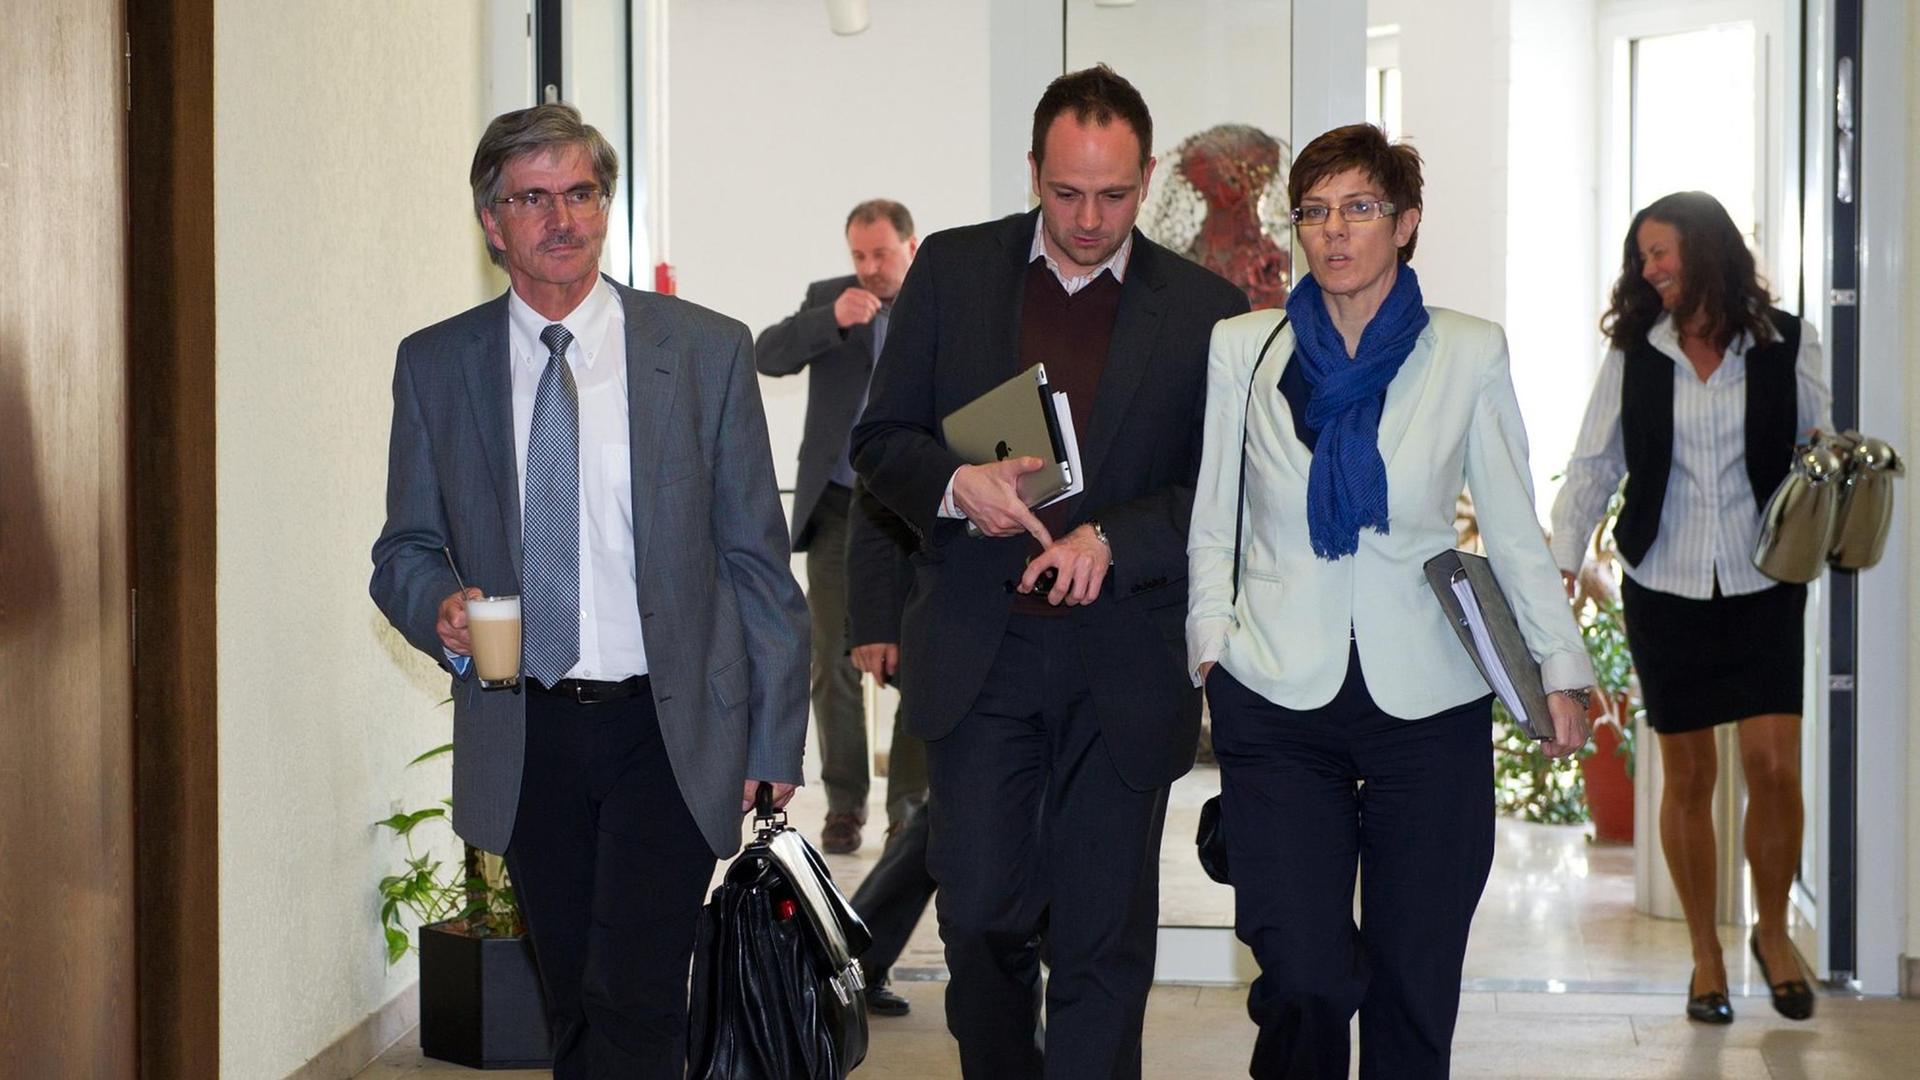 Das Tablet griffbereit: Regierungssprecher Thorsten Klein neben Annegret Kramp-Karrenbauer, der saarländischen Ministerpräsidentin.